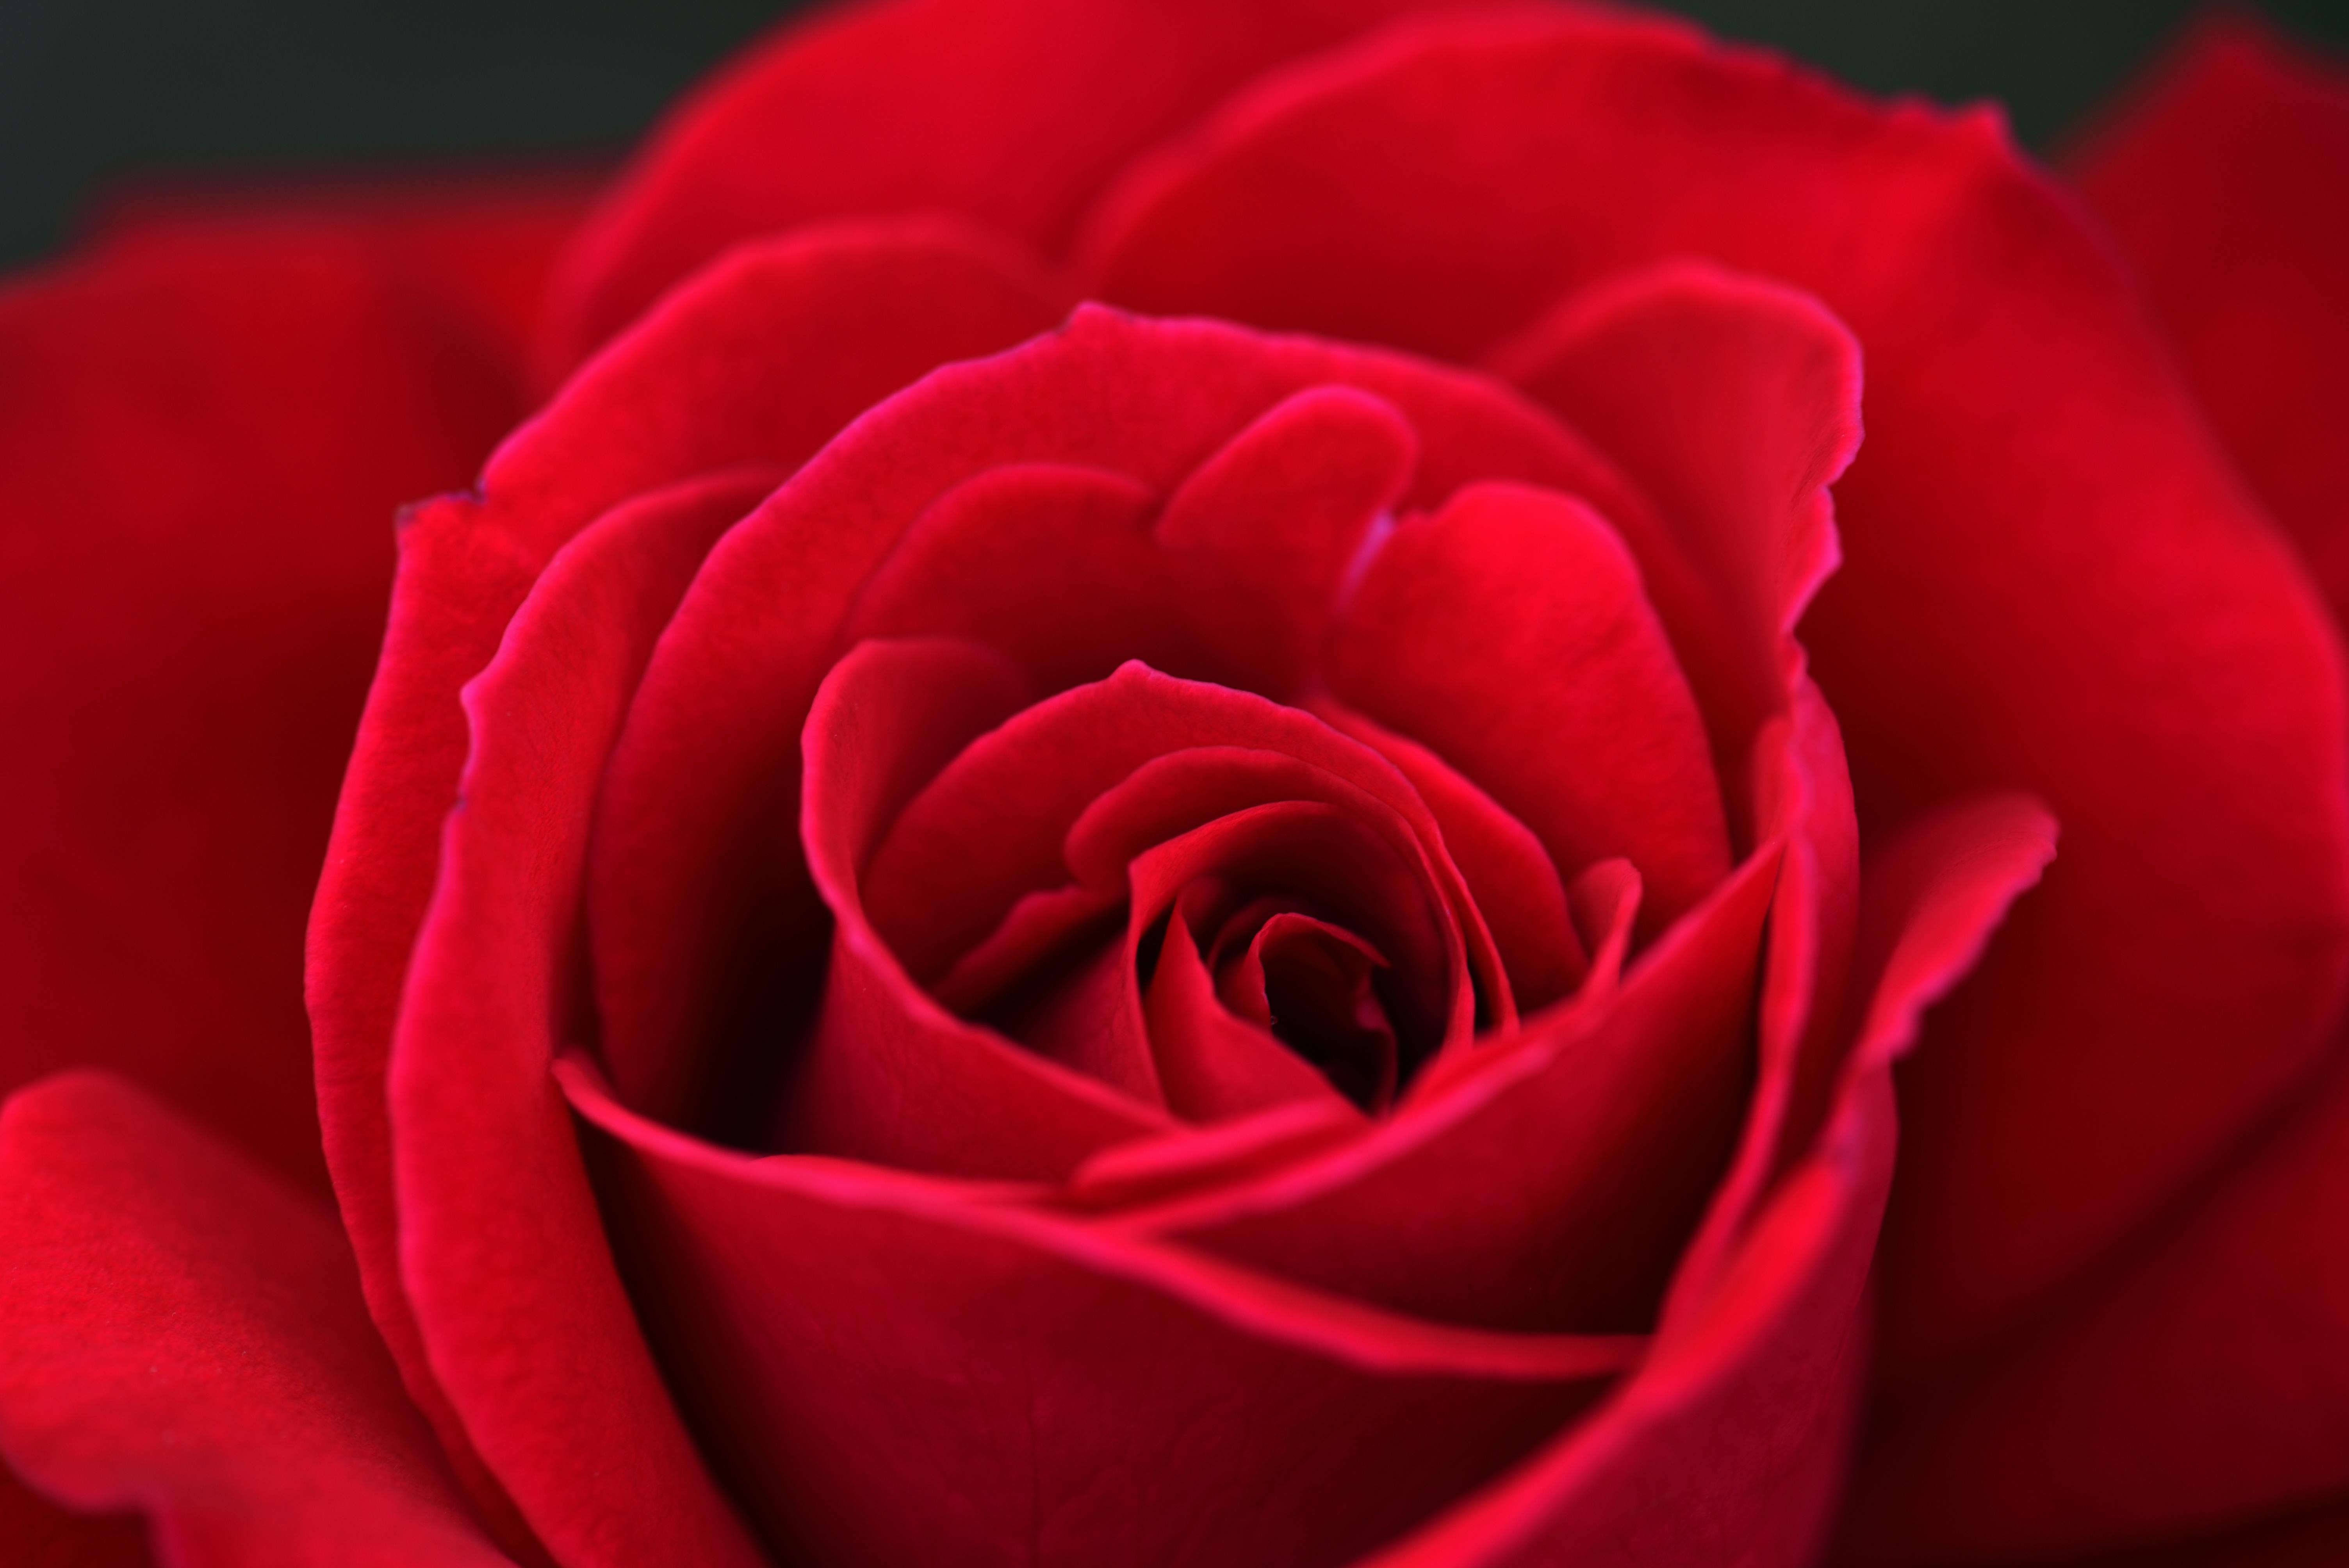 Rose flower wallpaper for mobile phone